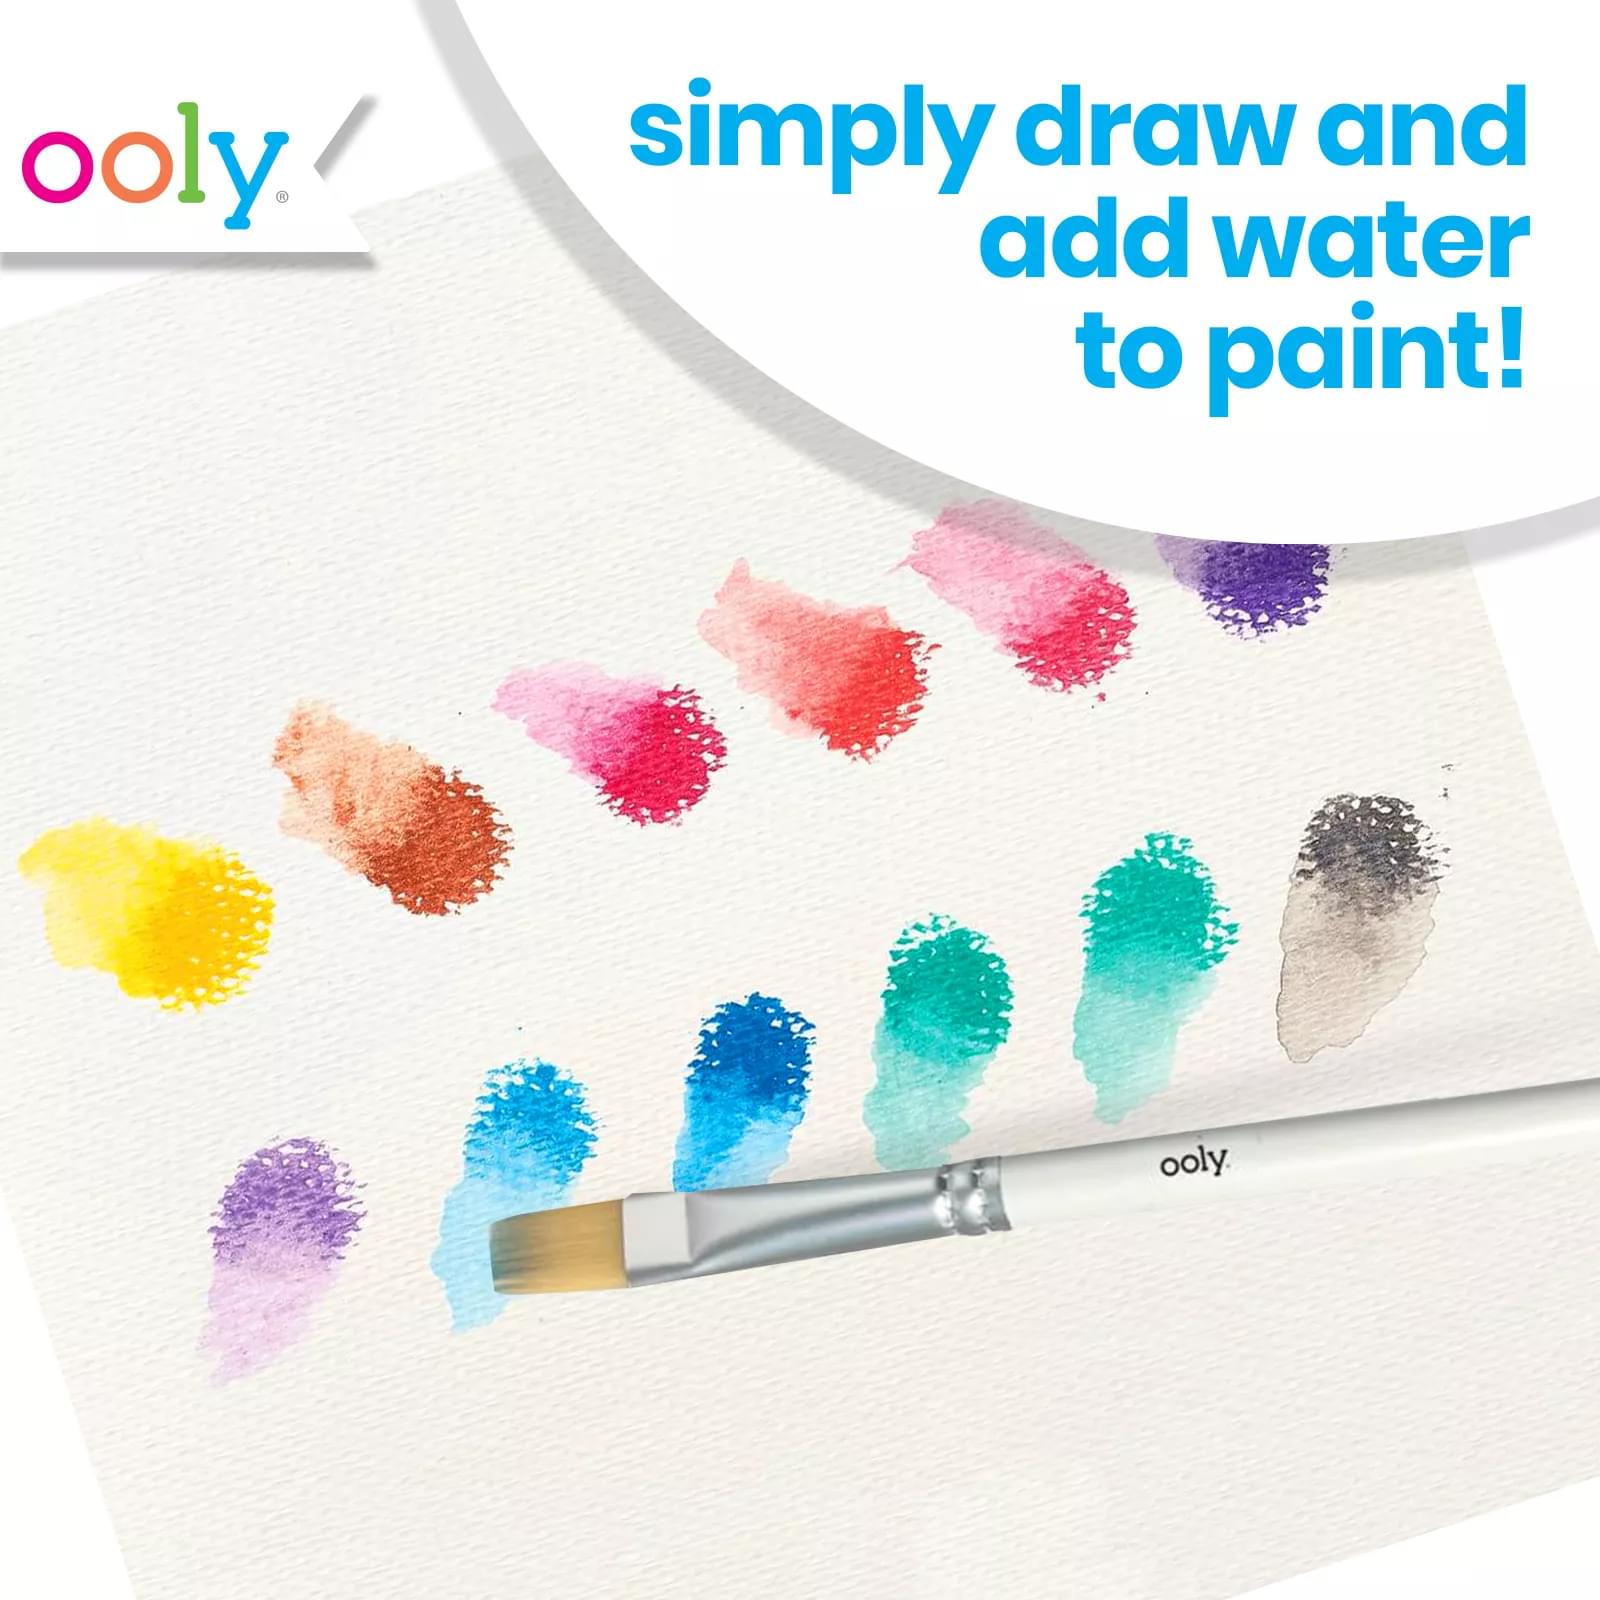 Ooly Watercolor Gel Crayons  Creative Kids - Rocket Toys